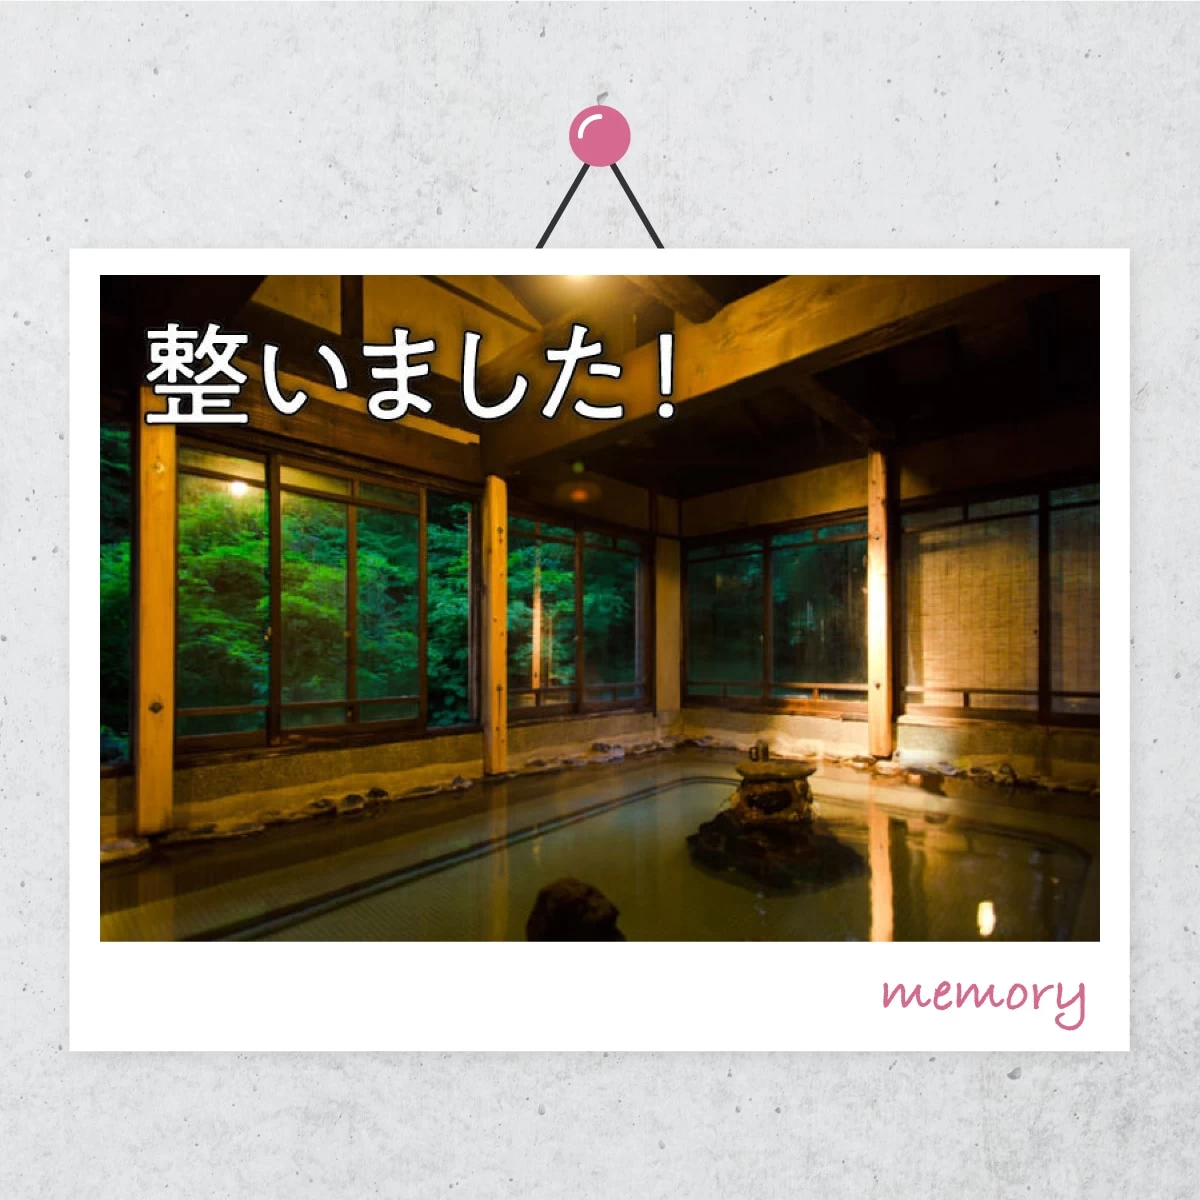 栃尾又温泉でプチ湯治  宿で寛ぐおこもり一人旅